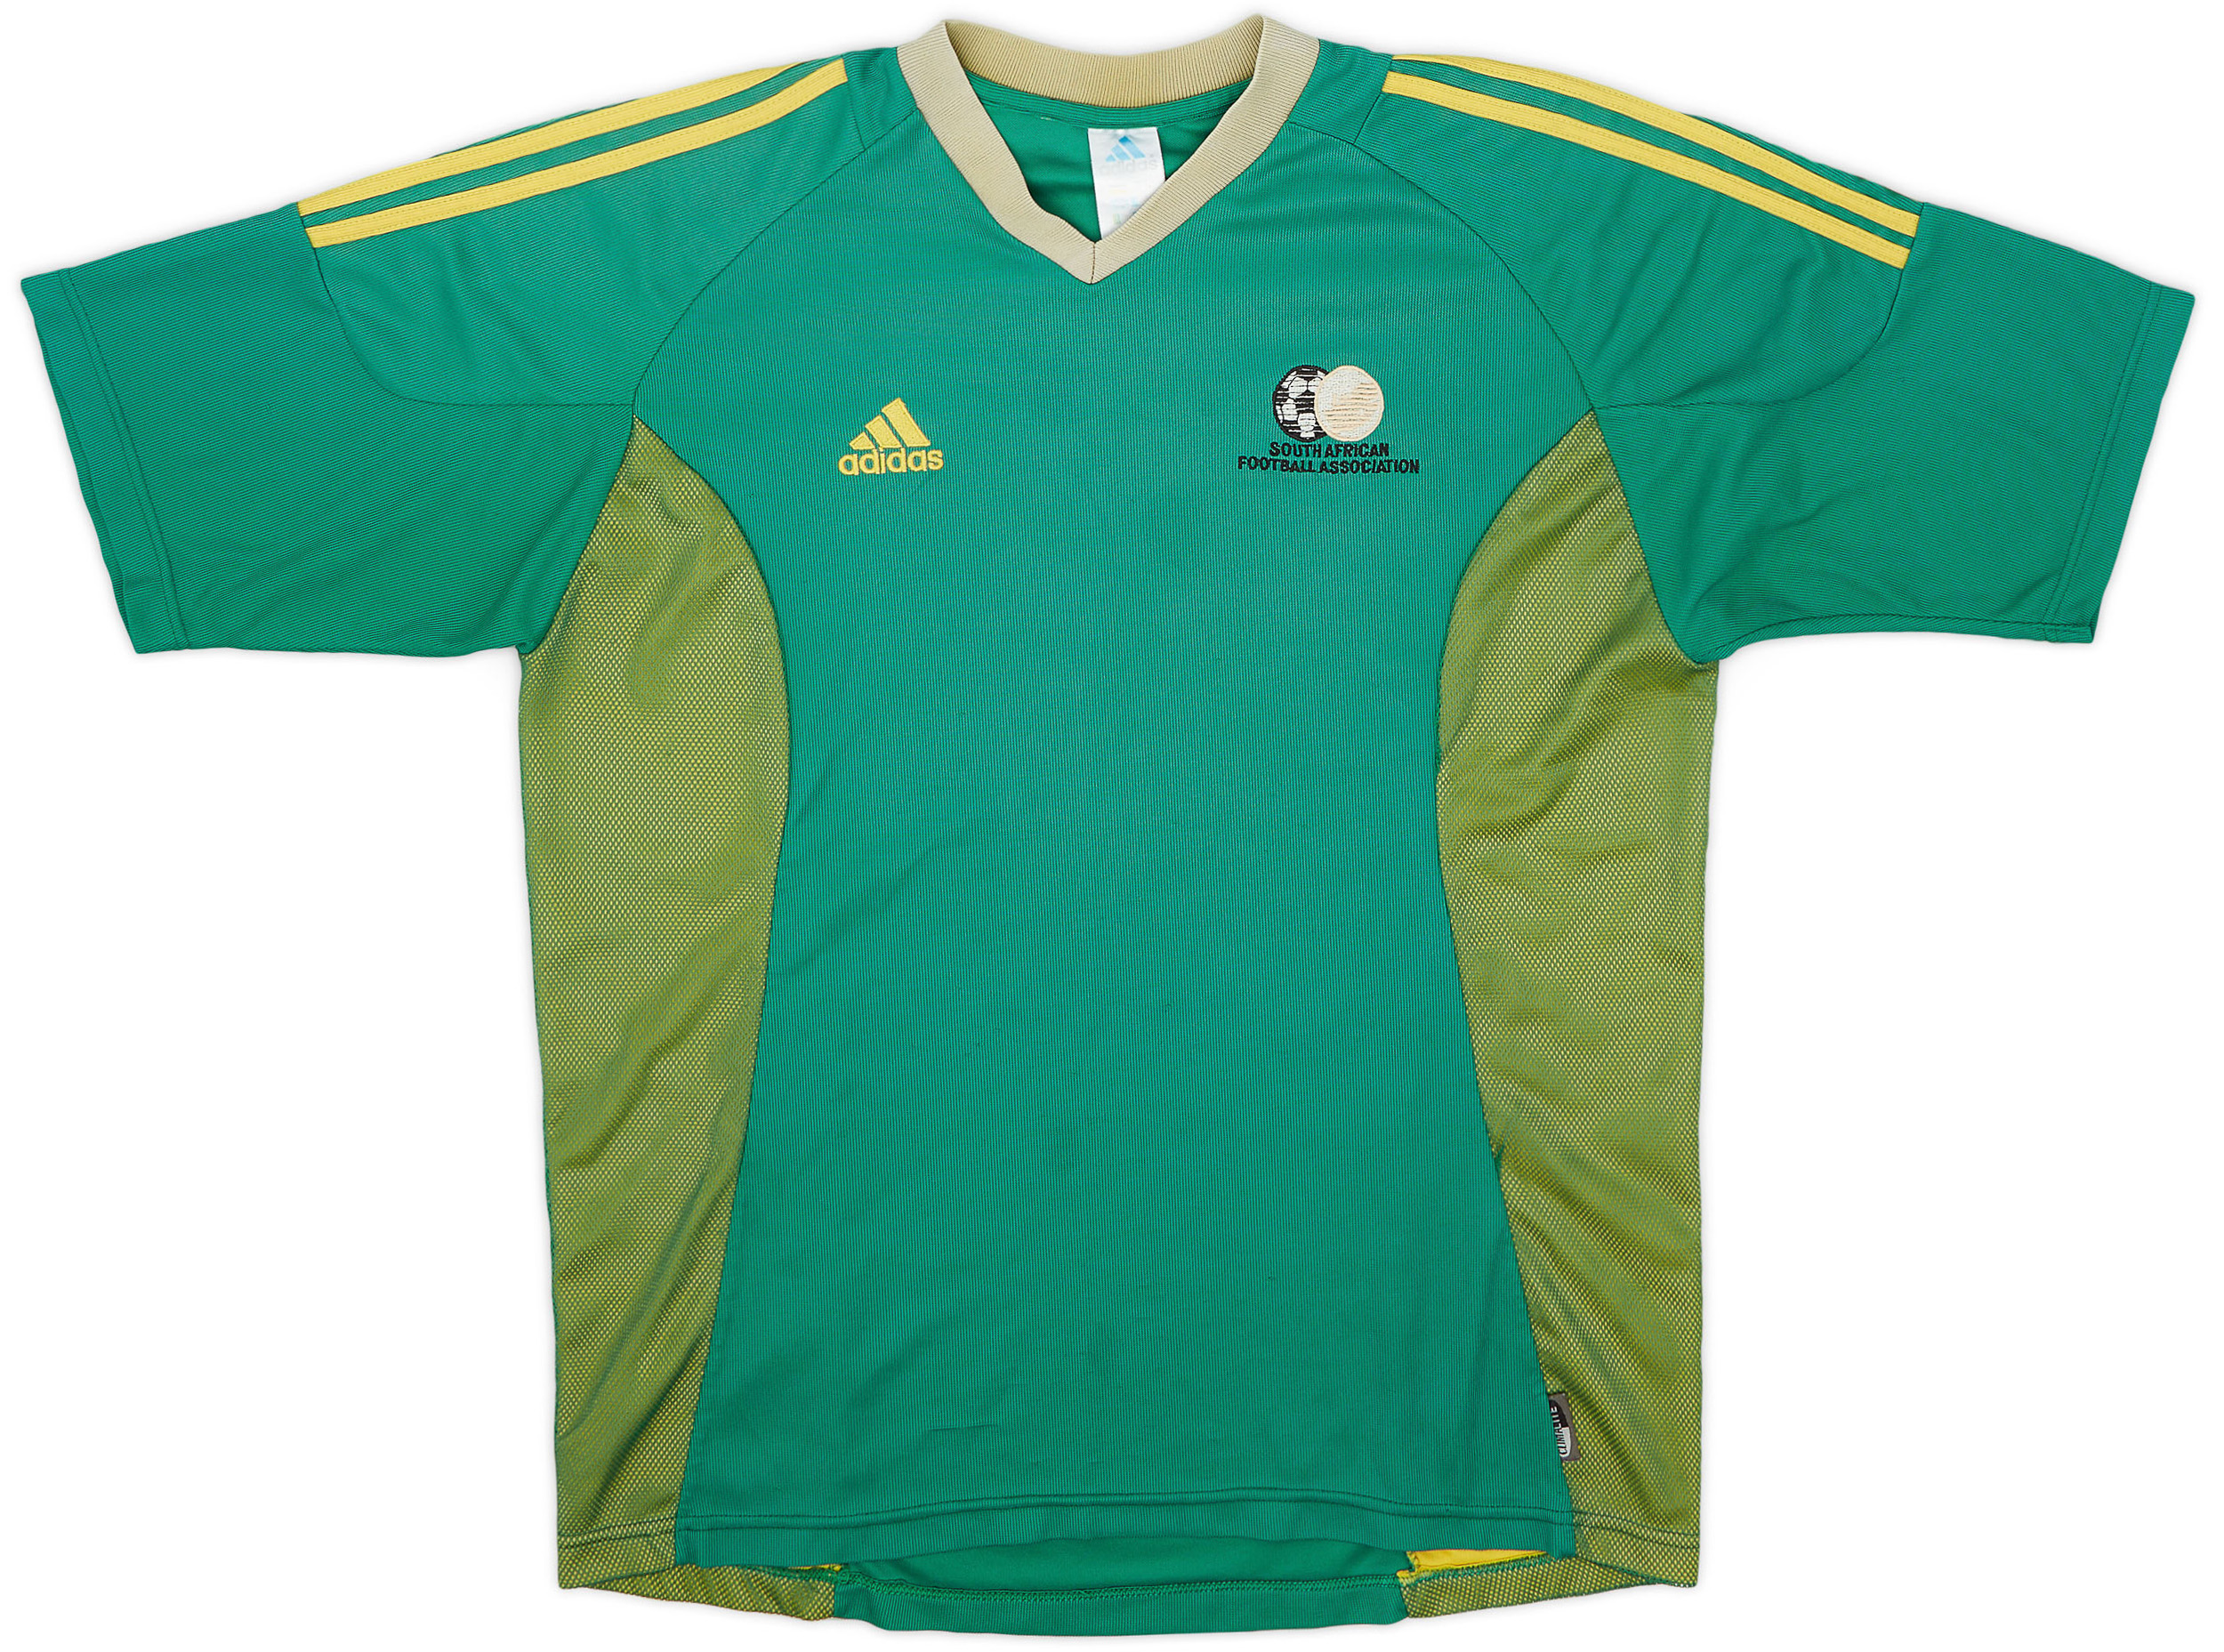 2002-04 South Africa Third Shirt - 5/10 - ()